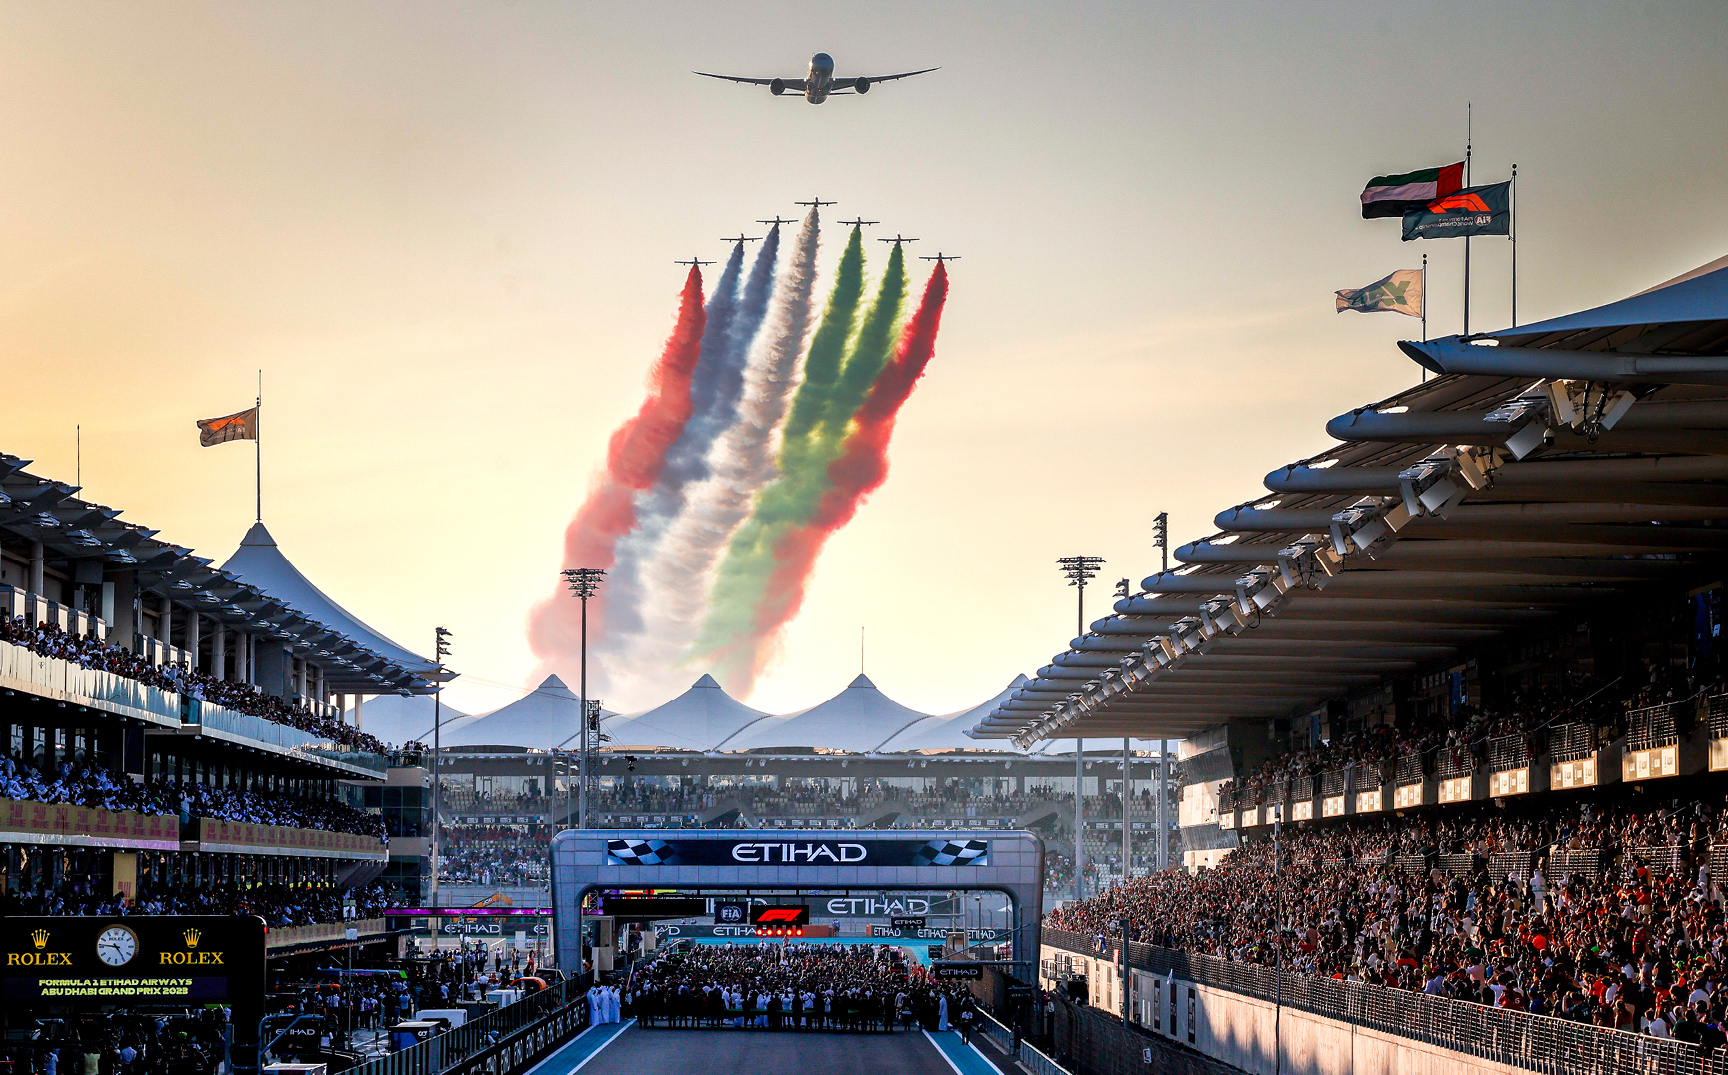 سباق جائزة الاتحاد للطيران الكبرى للفورمولا1 في أبوظبي لعام 2023: ختام تاريخي لموسم البطولة